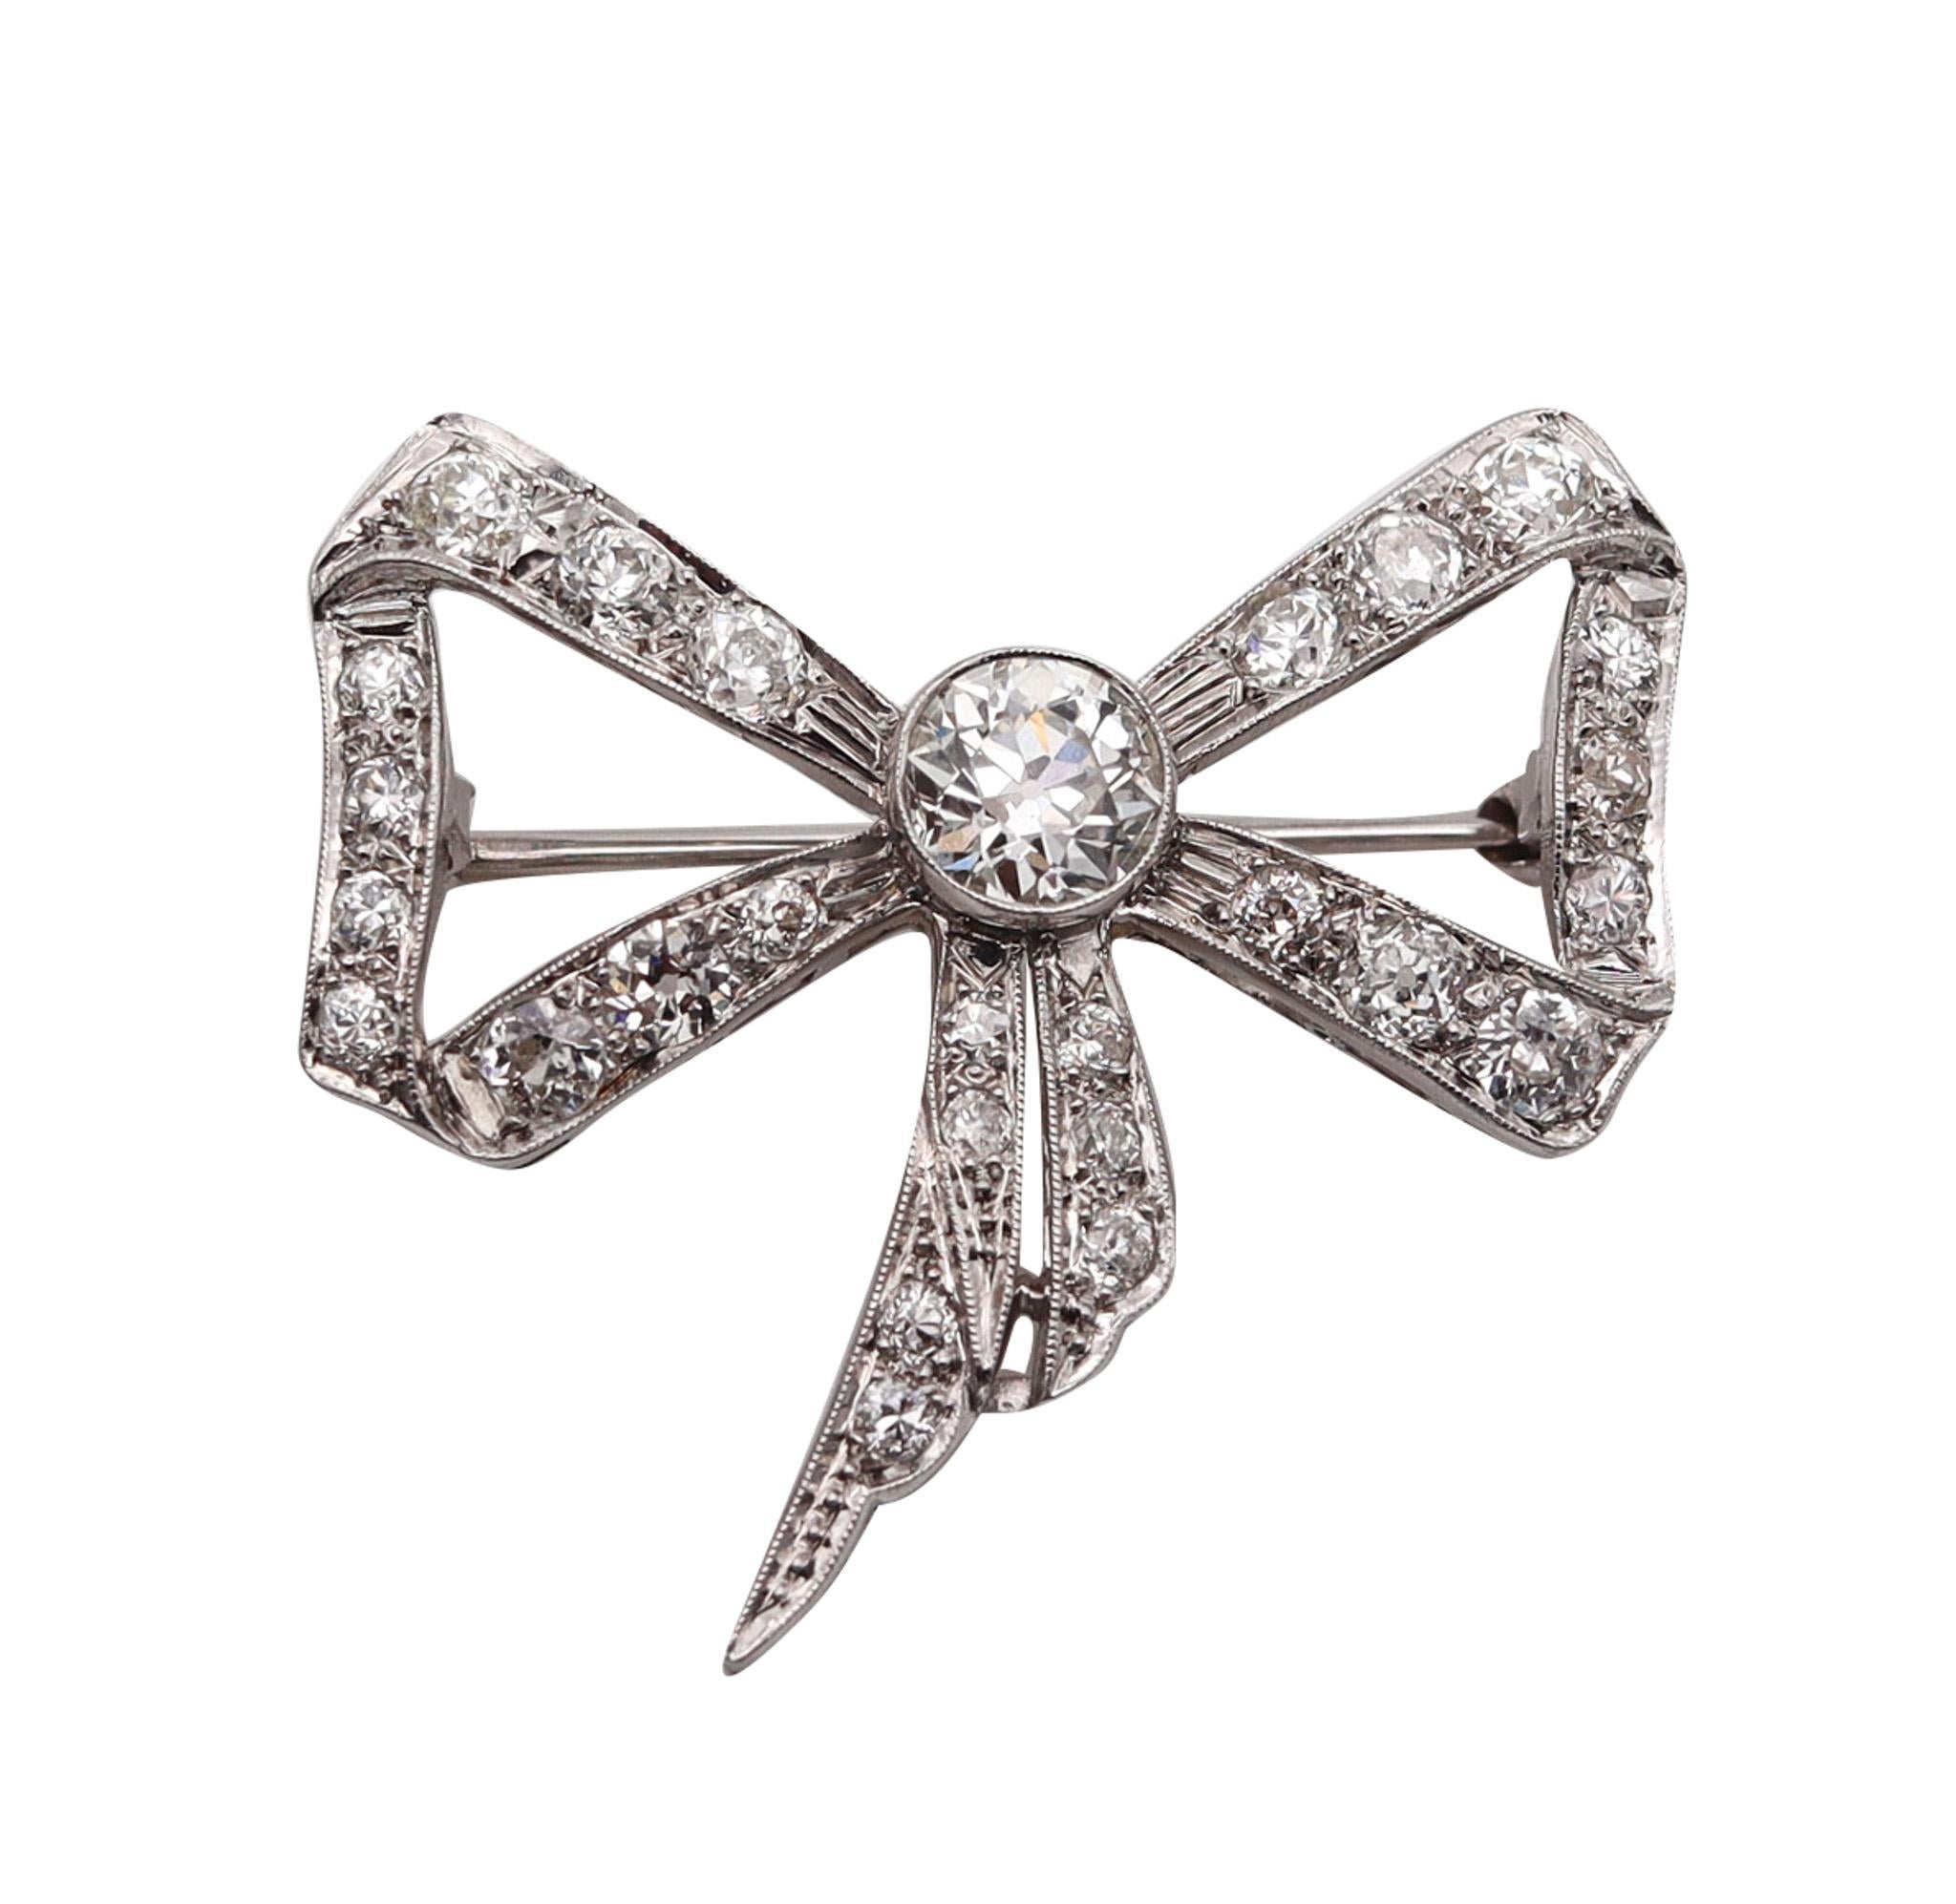 Beladora Antique Edwardian Shreve & Co. Diamond Bow Brooch in #514307